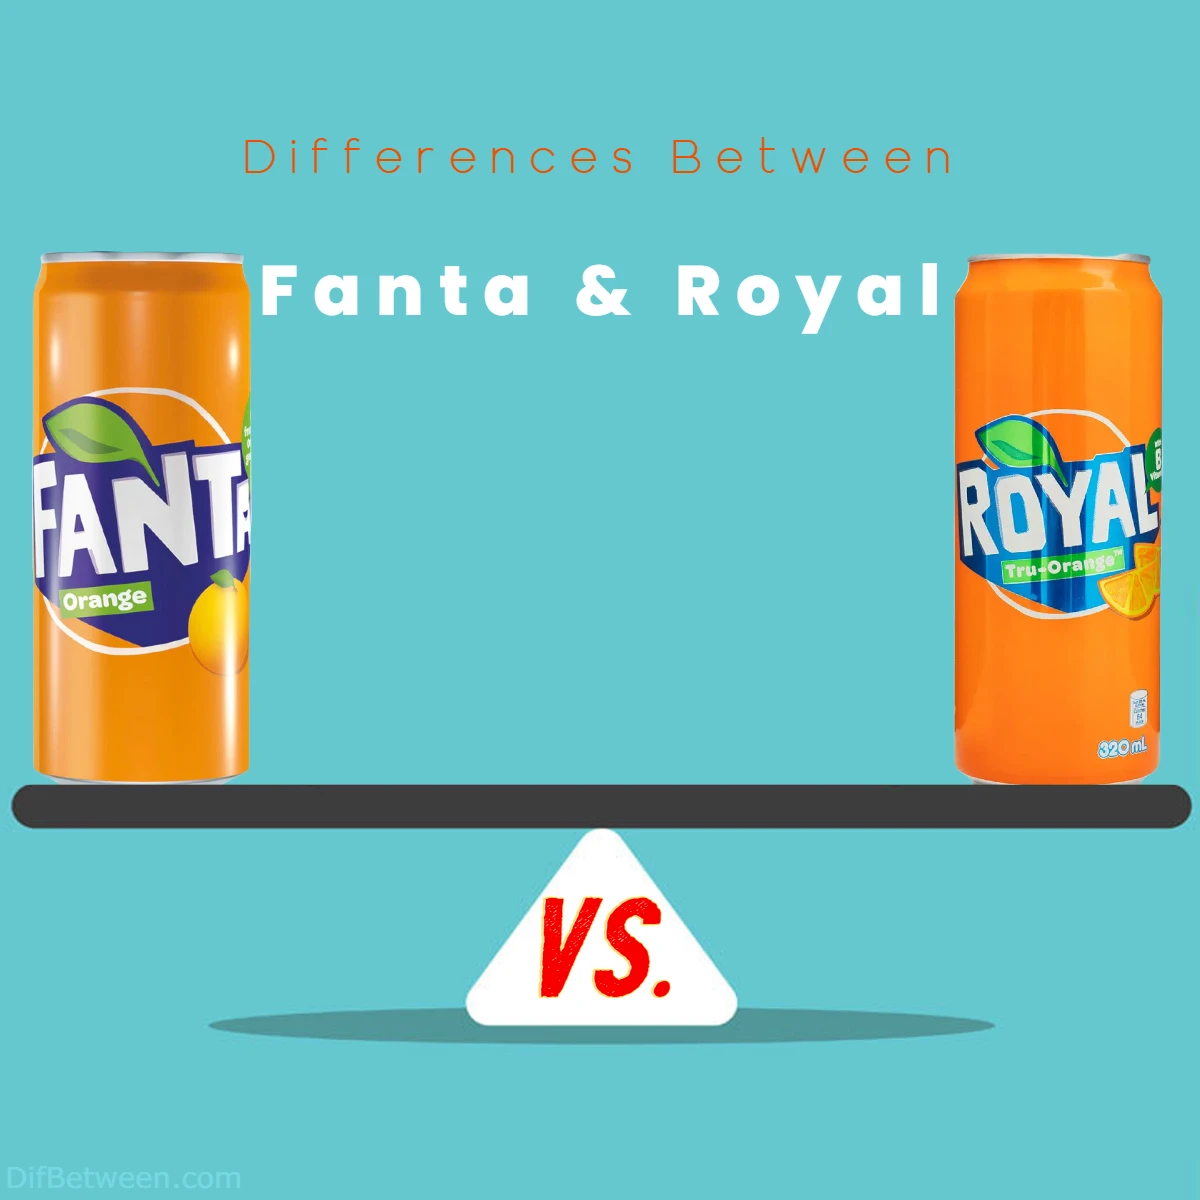 Differences Between Royal vs Fanta